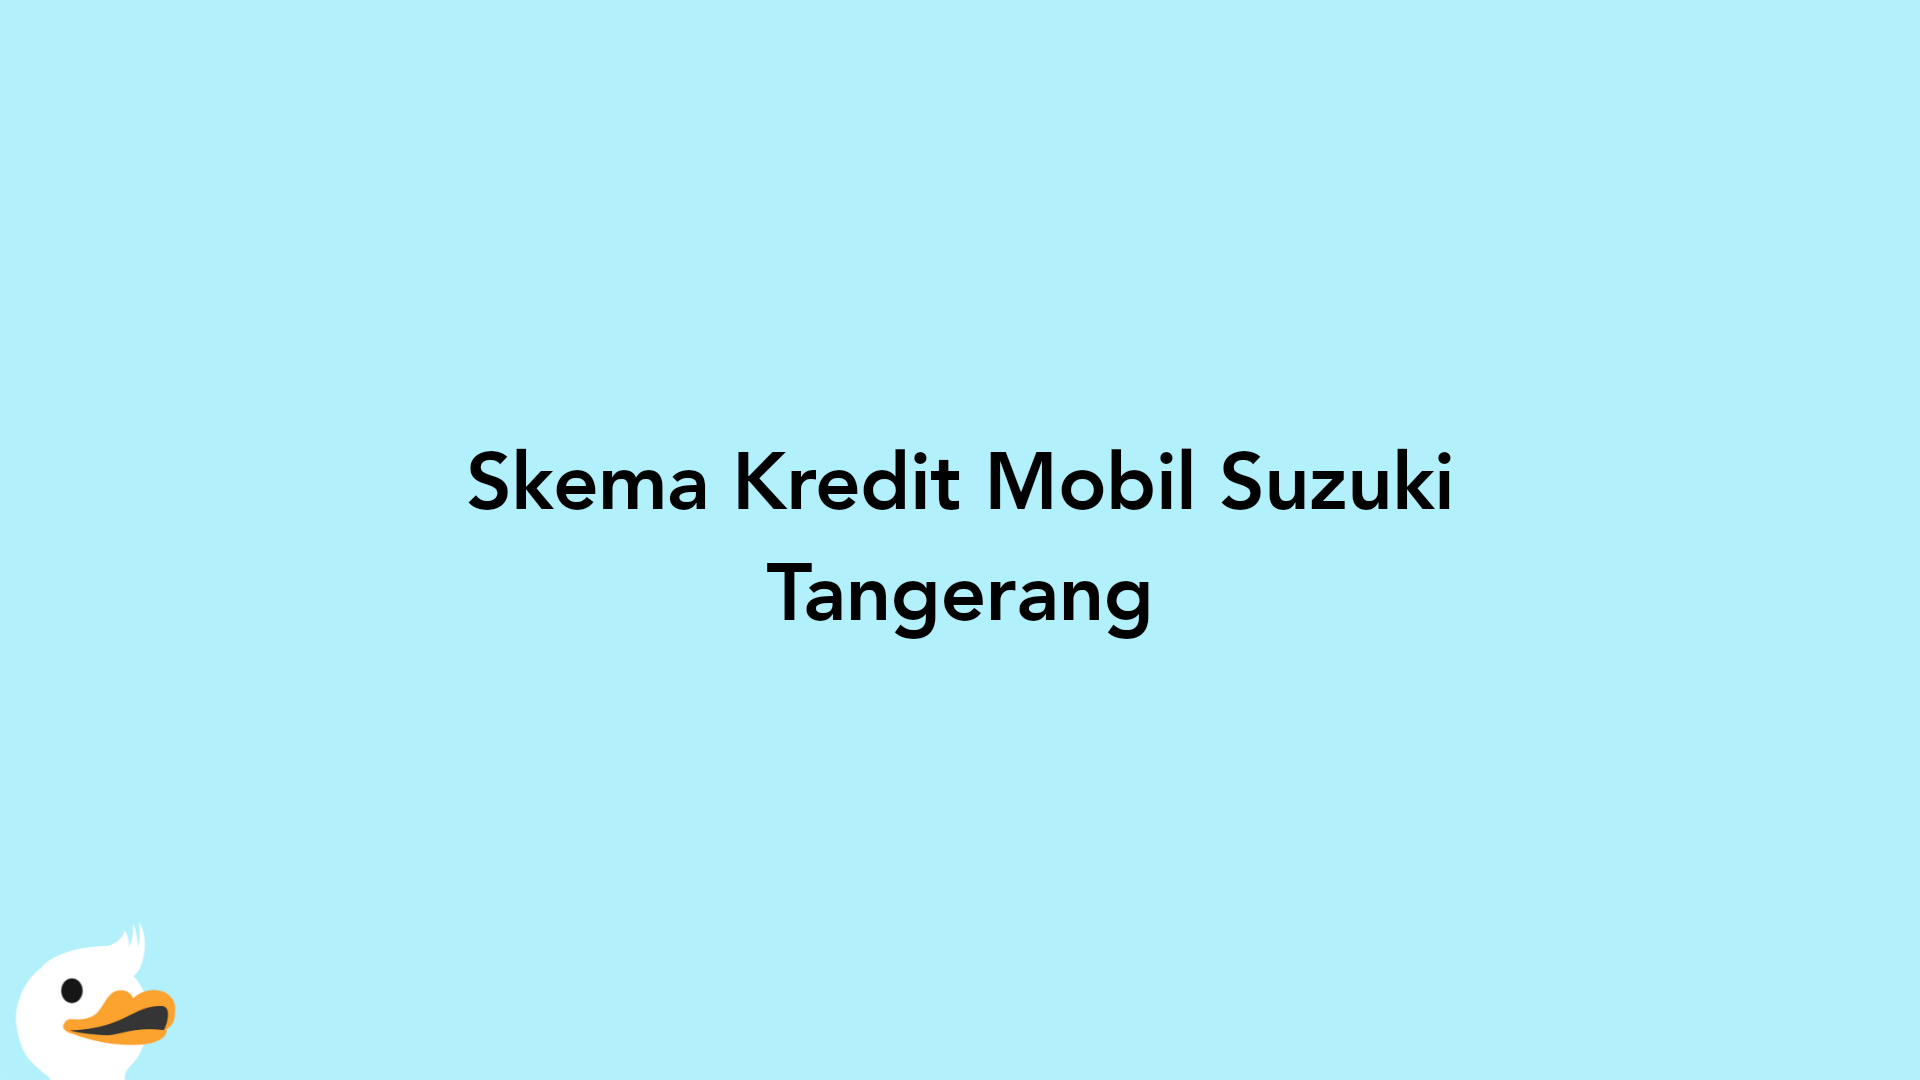 Skema Kredit Mobil Suzuki Tangerang